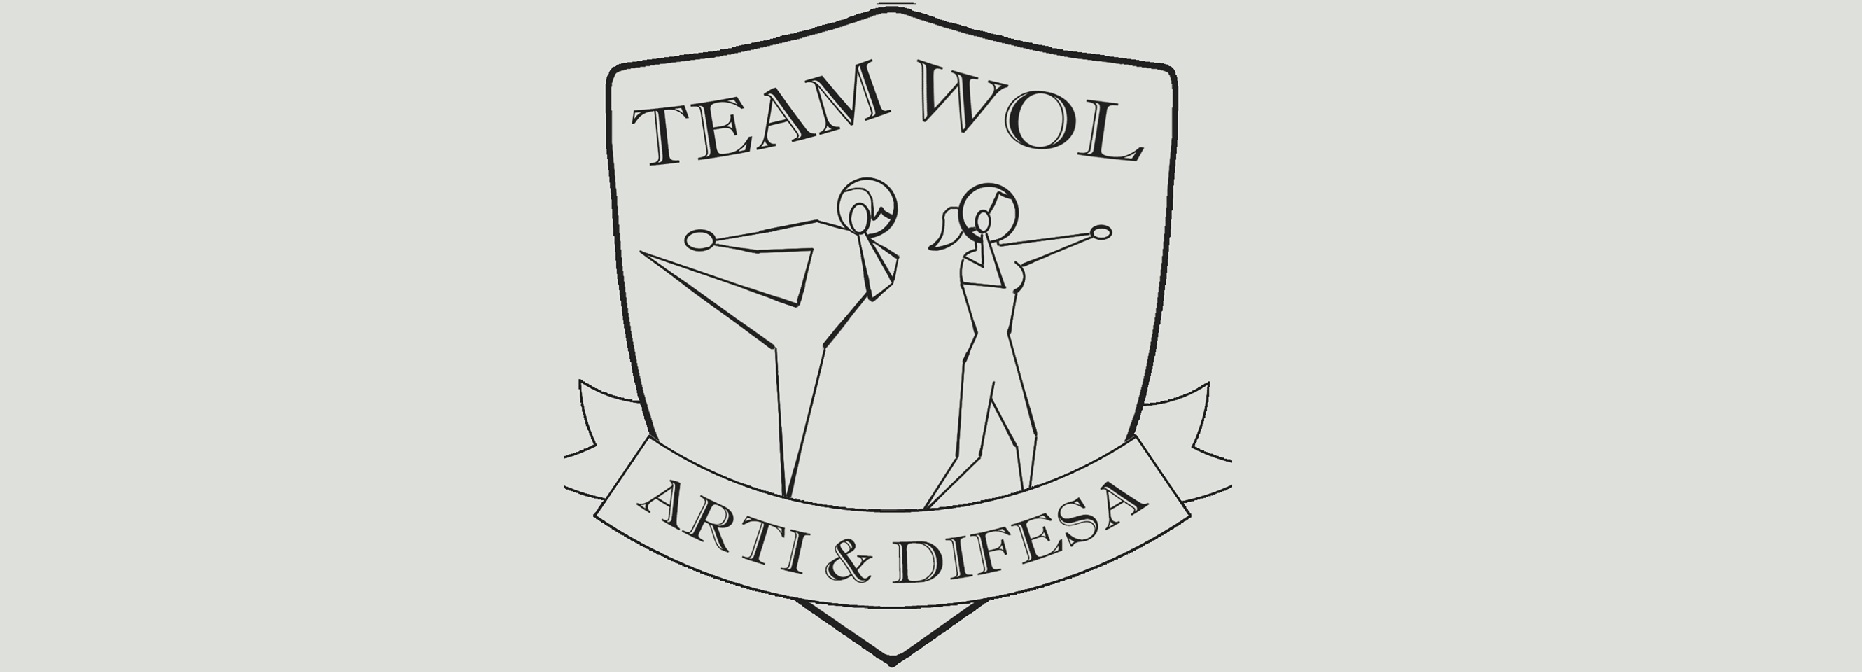 Associazione Team Wol ASD Arti e Difesa - logo